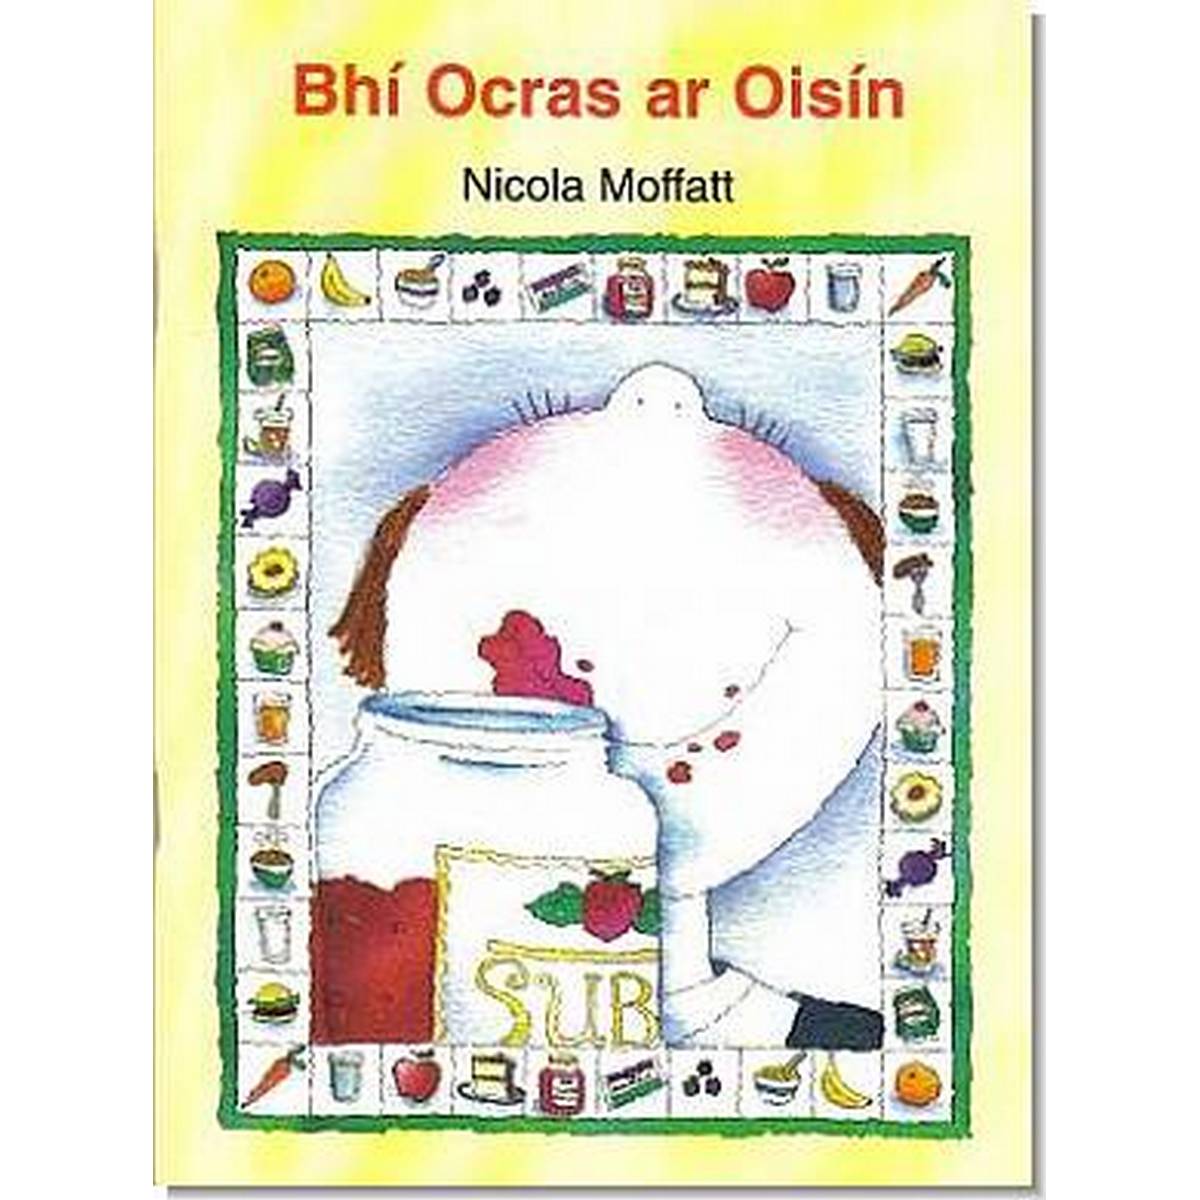 Bhi Ocras ar Oisin